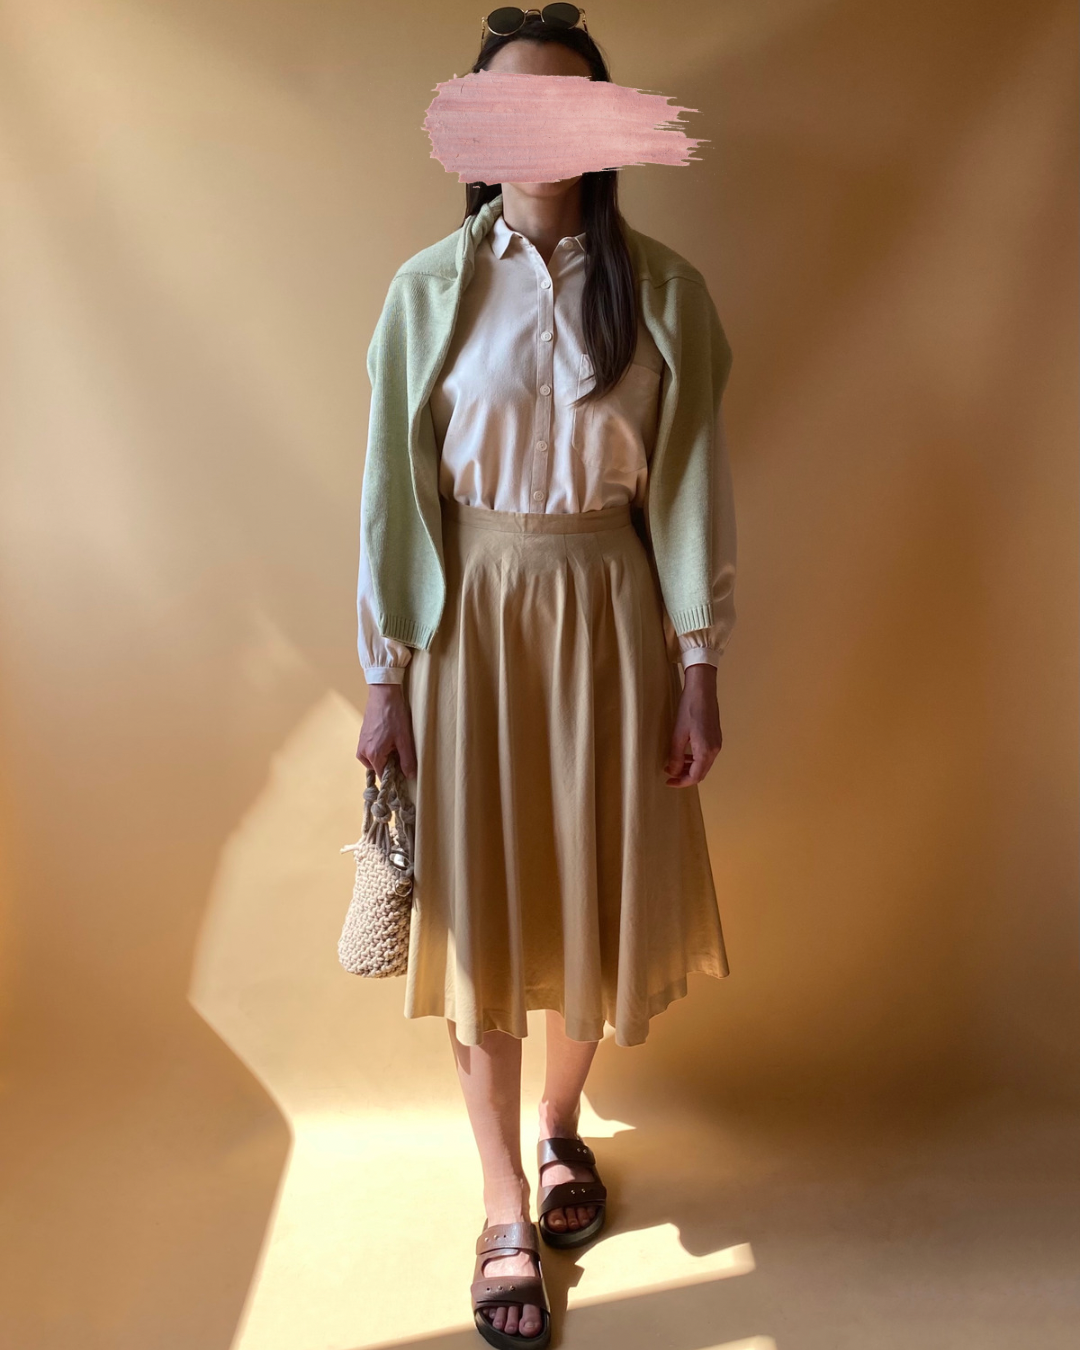 Vintage Biscuit Midi Skirt